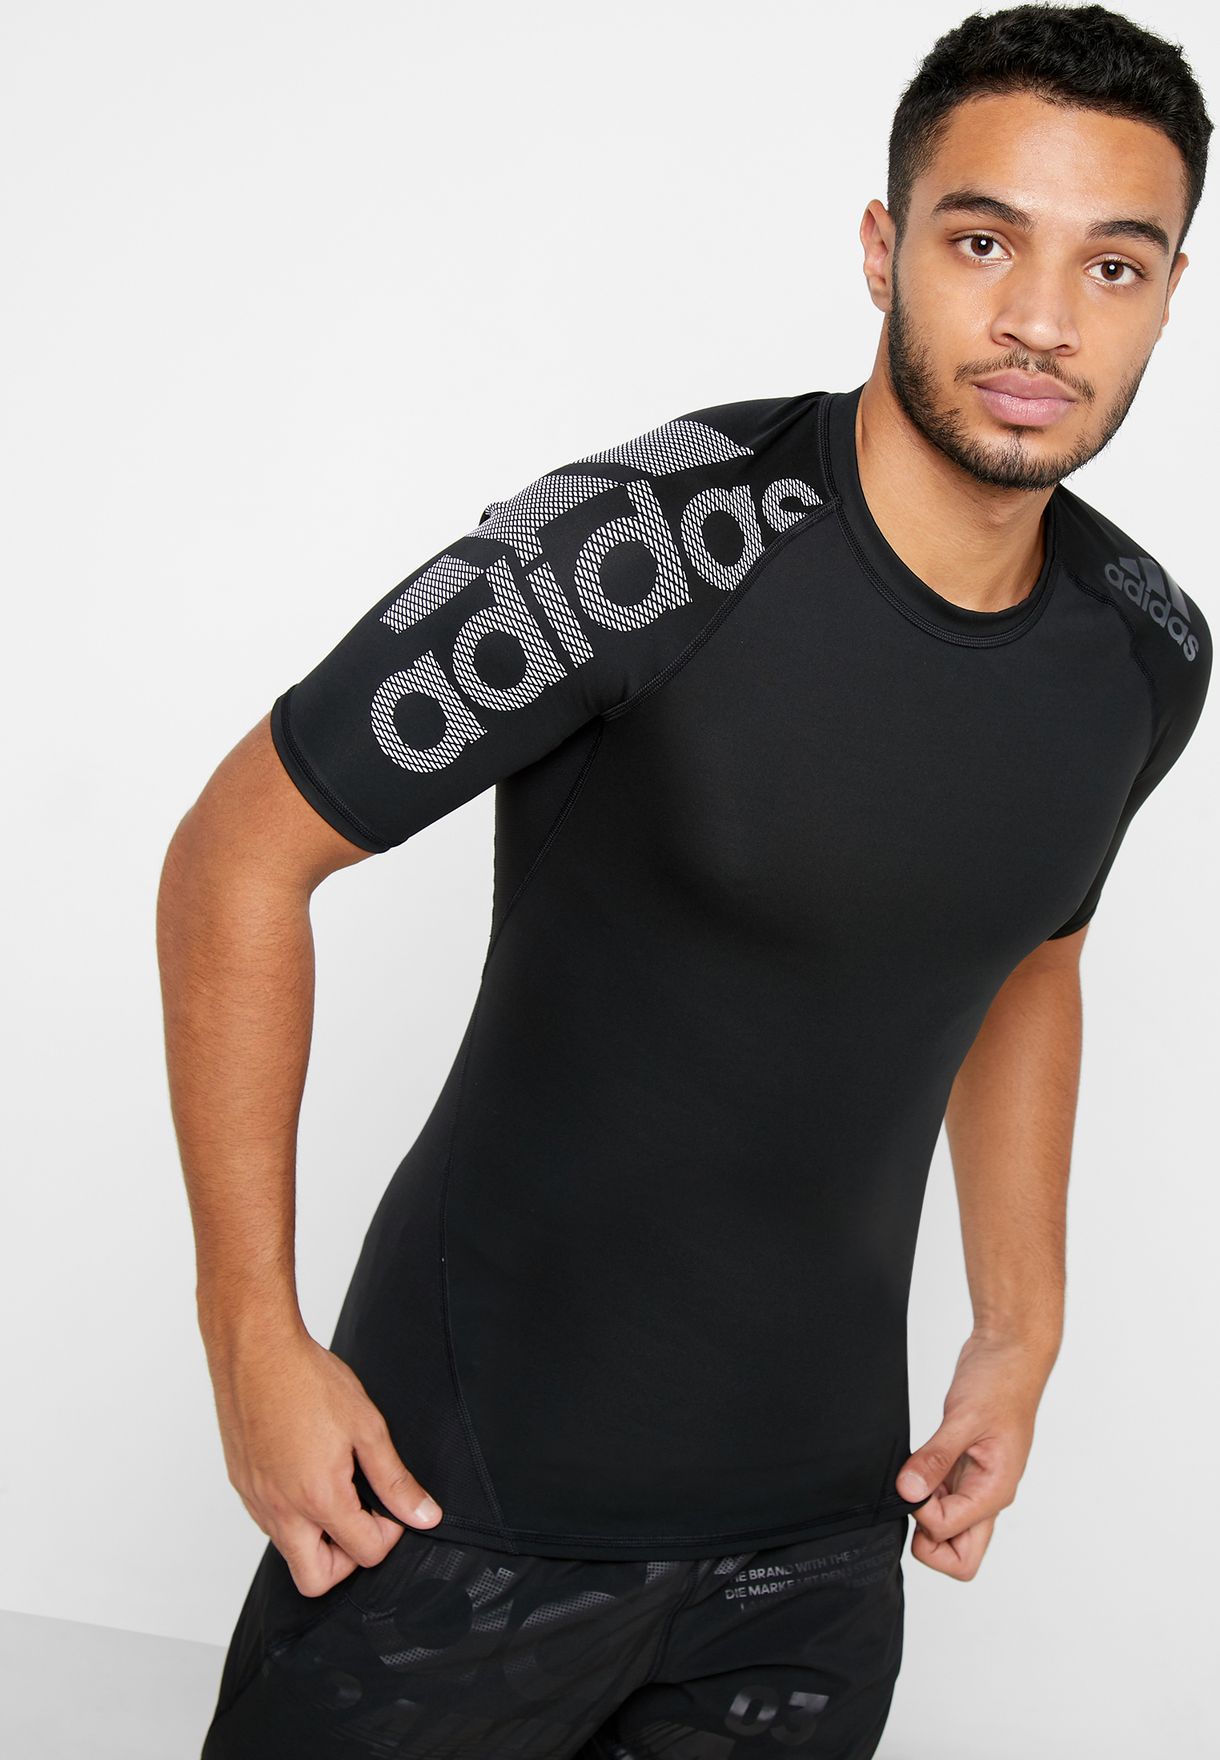 เสื้อวิ่ง ผู้ชาย อาดิดาส Adidas ClimaCool Tee ผ้าเบาใส่สบาย ระบายอากาศดี ของแท้ 100%